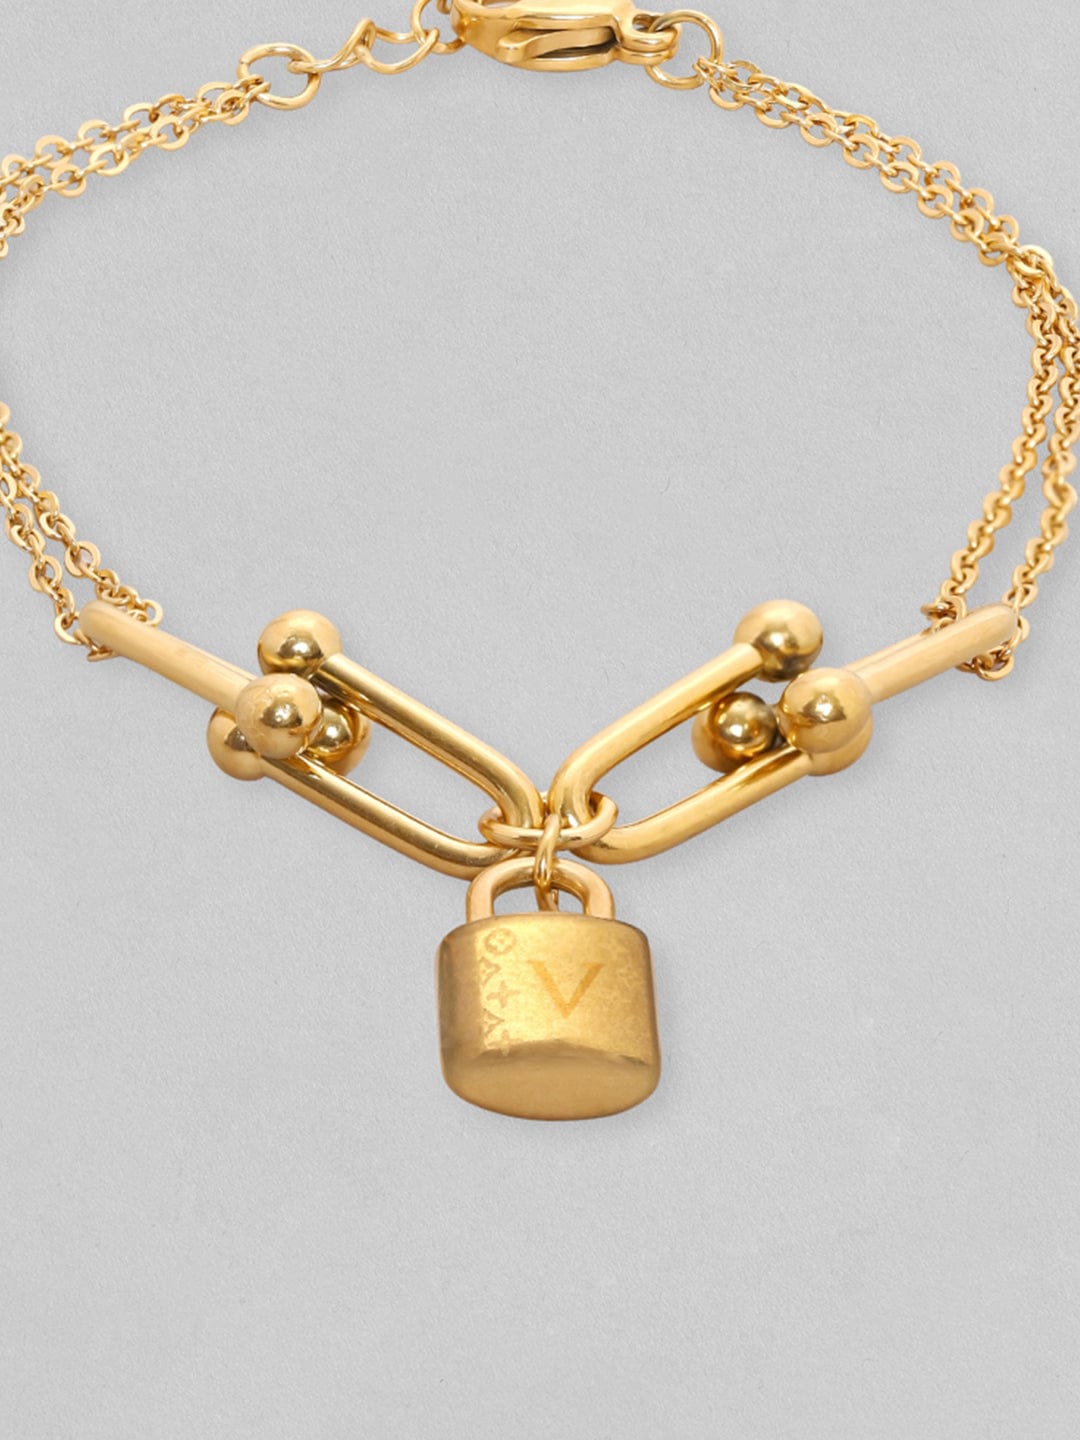 Rubans Voguish 18K Gold Plated Link With Charm Minimal Bracelet Bangles & Bracelets